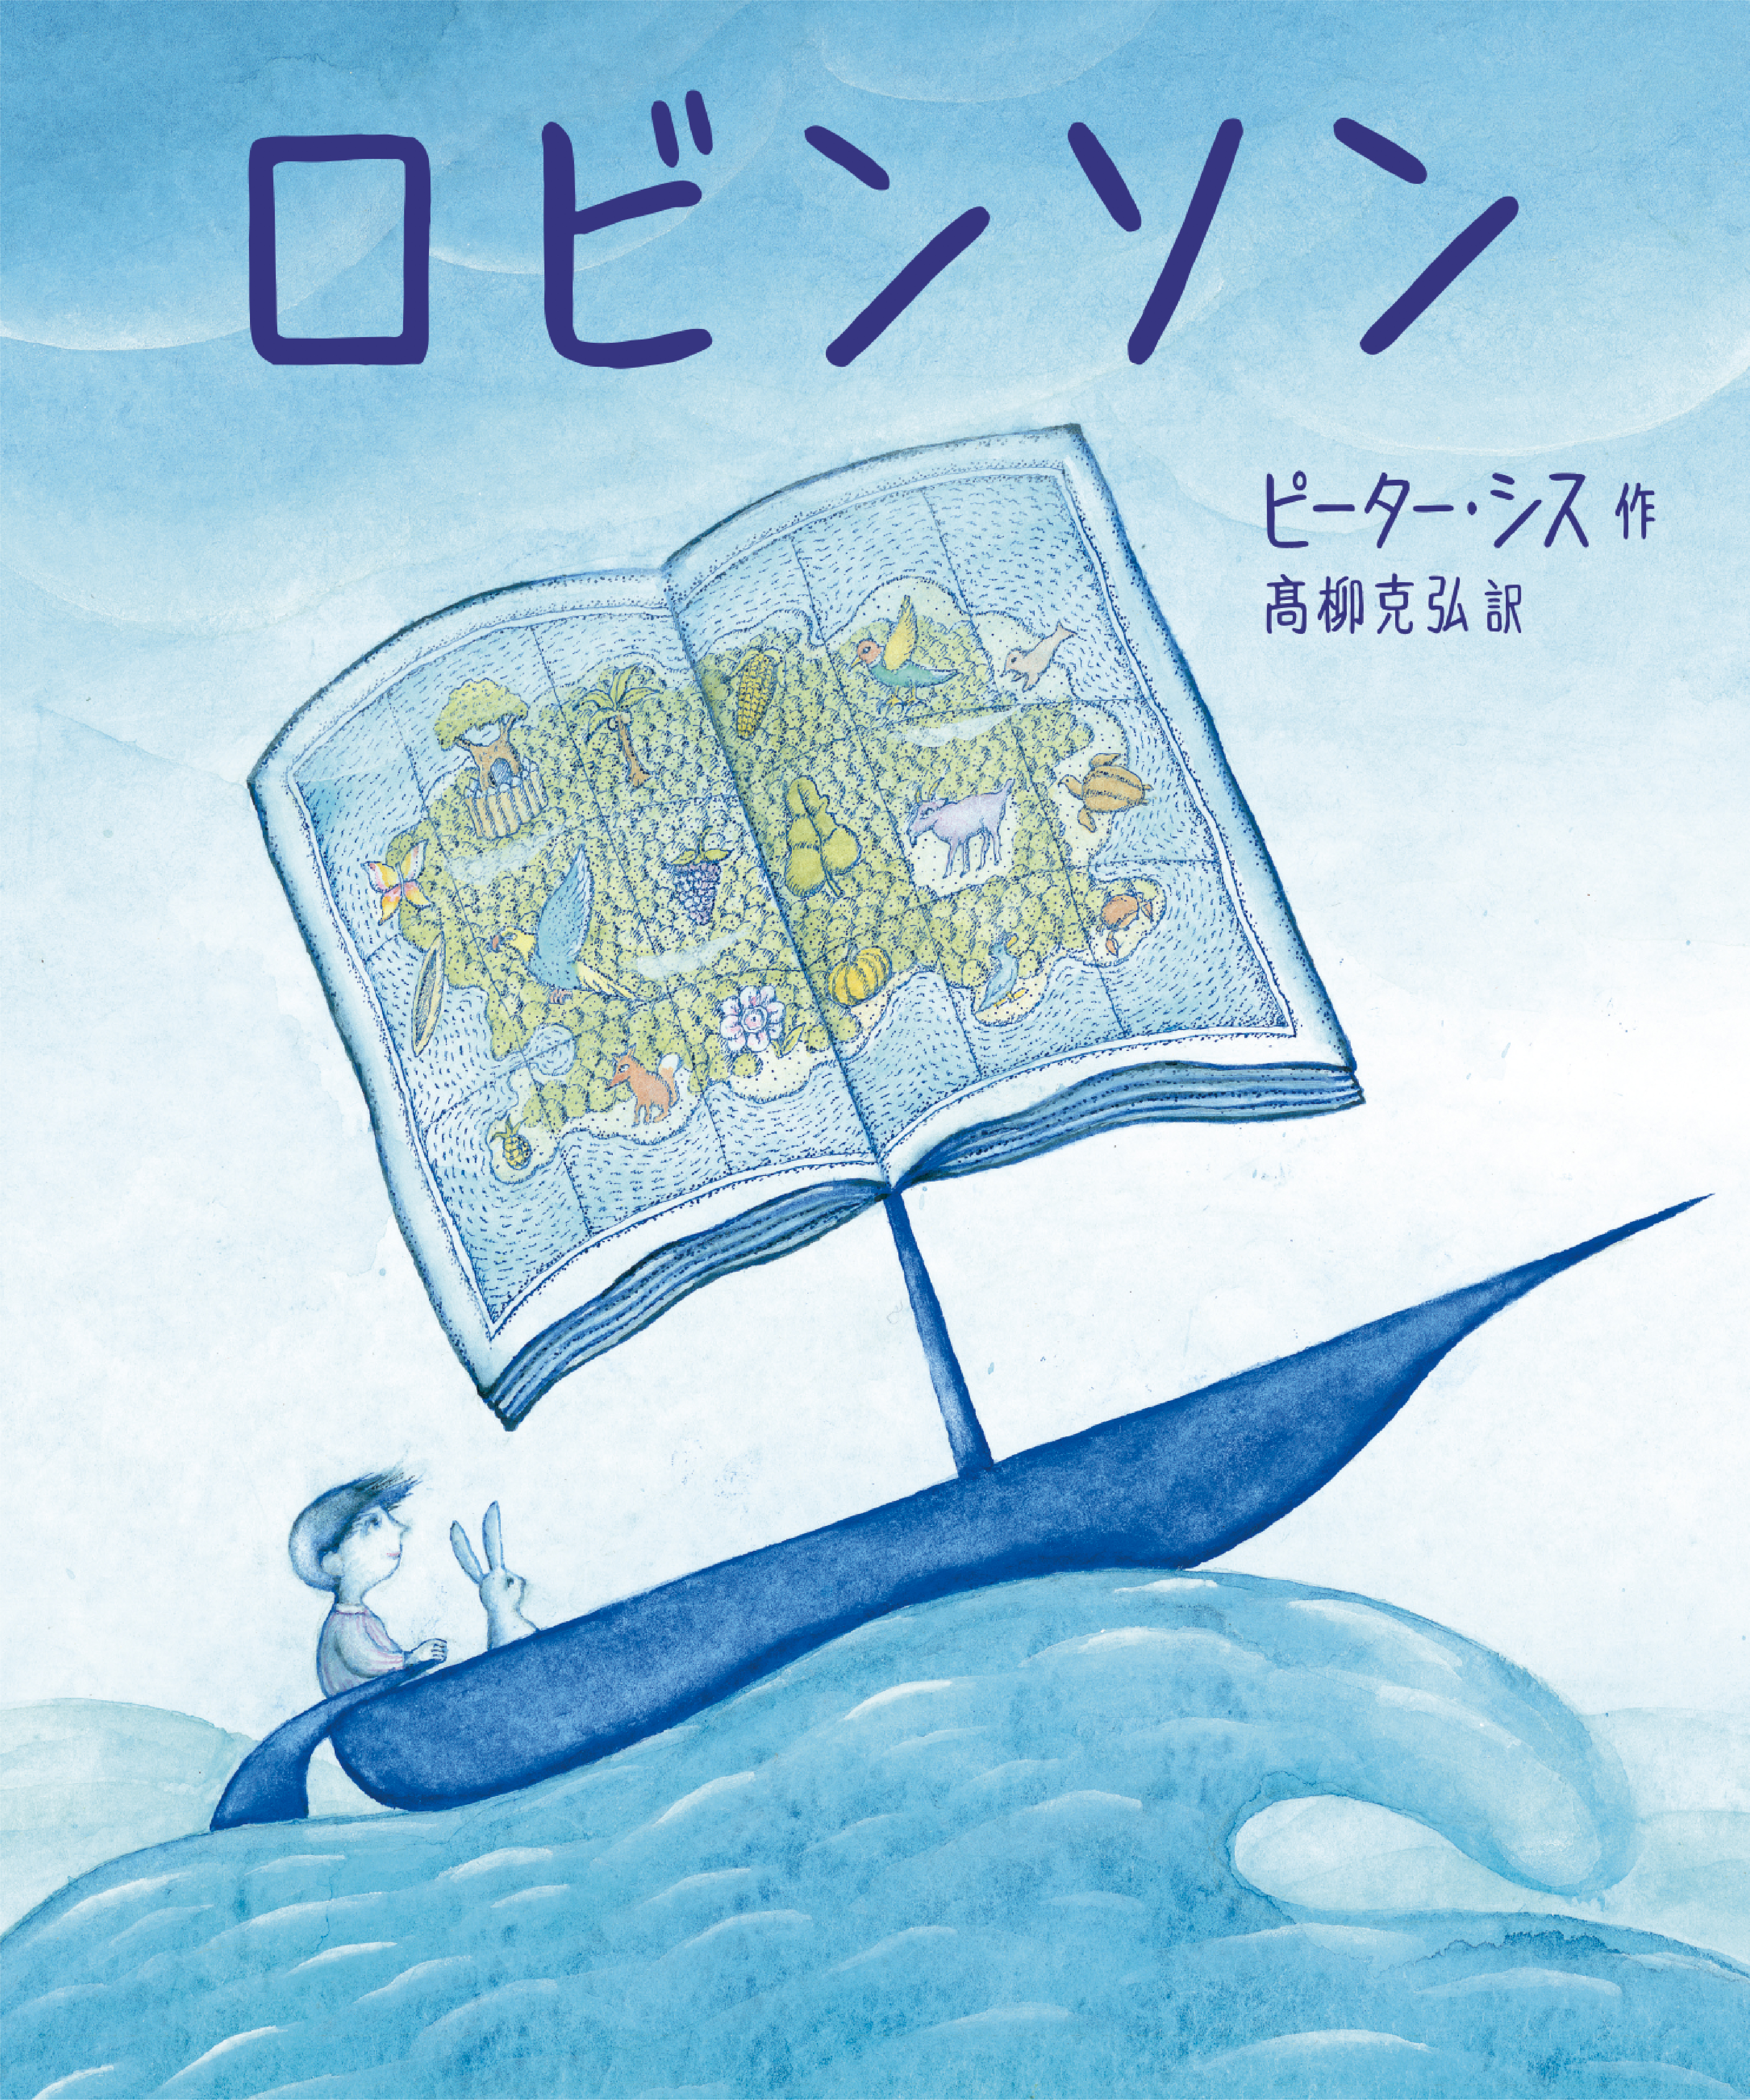 日本語版の絵本「ロビンソン」の表紙